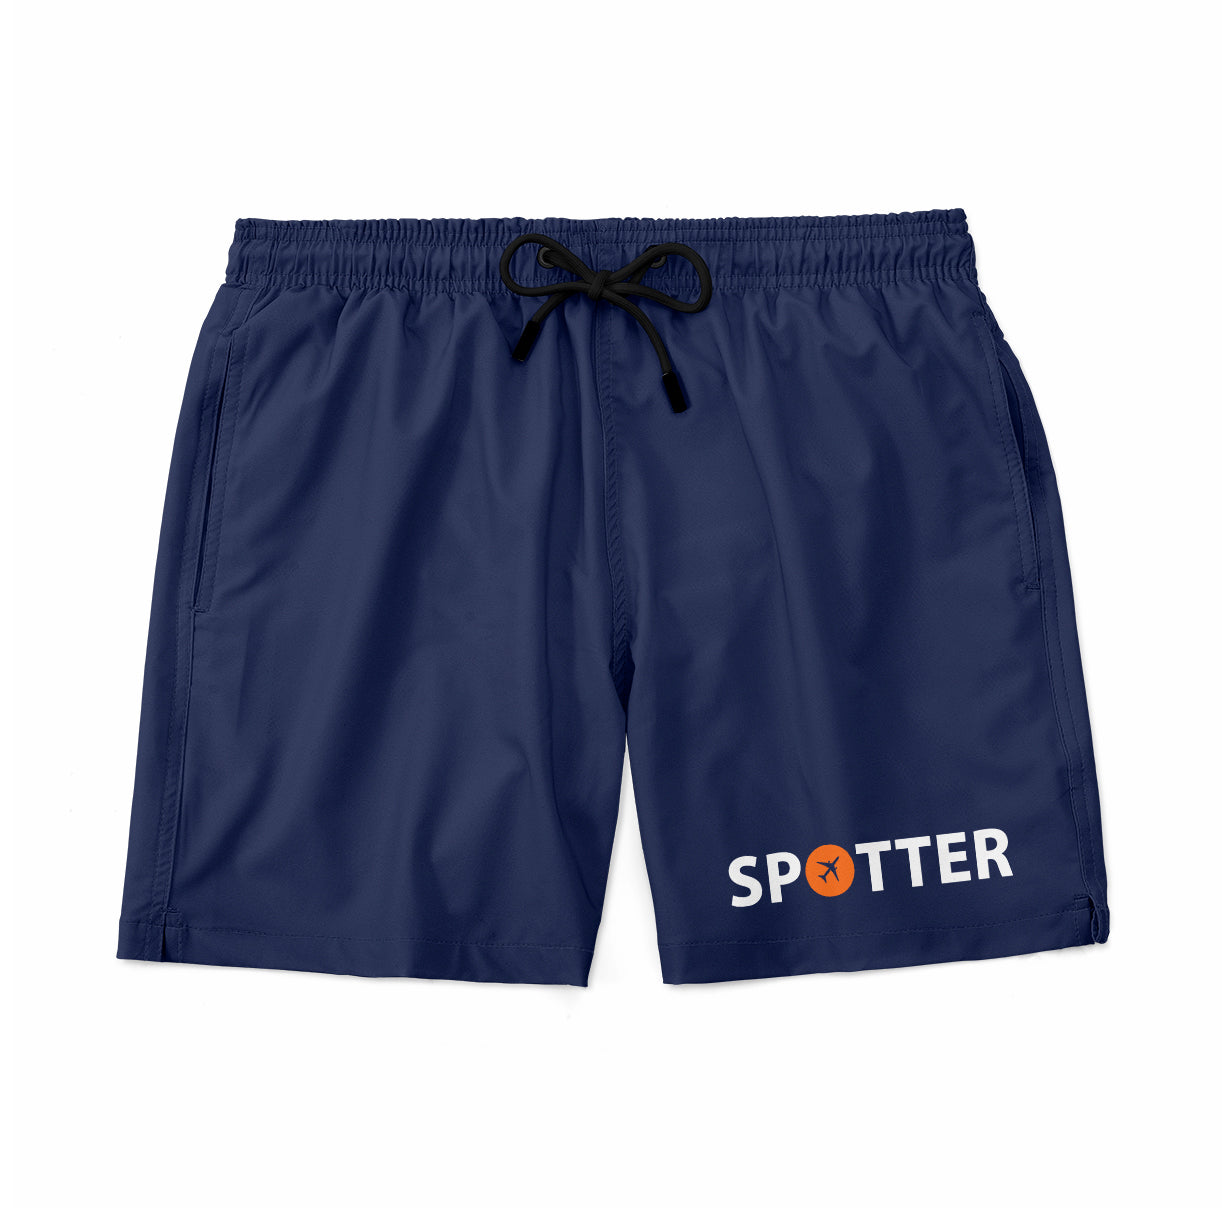 Spotter Designed Swim Trunks & Shorts